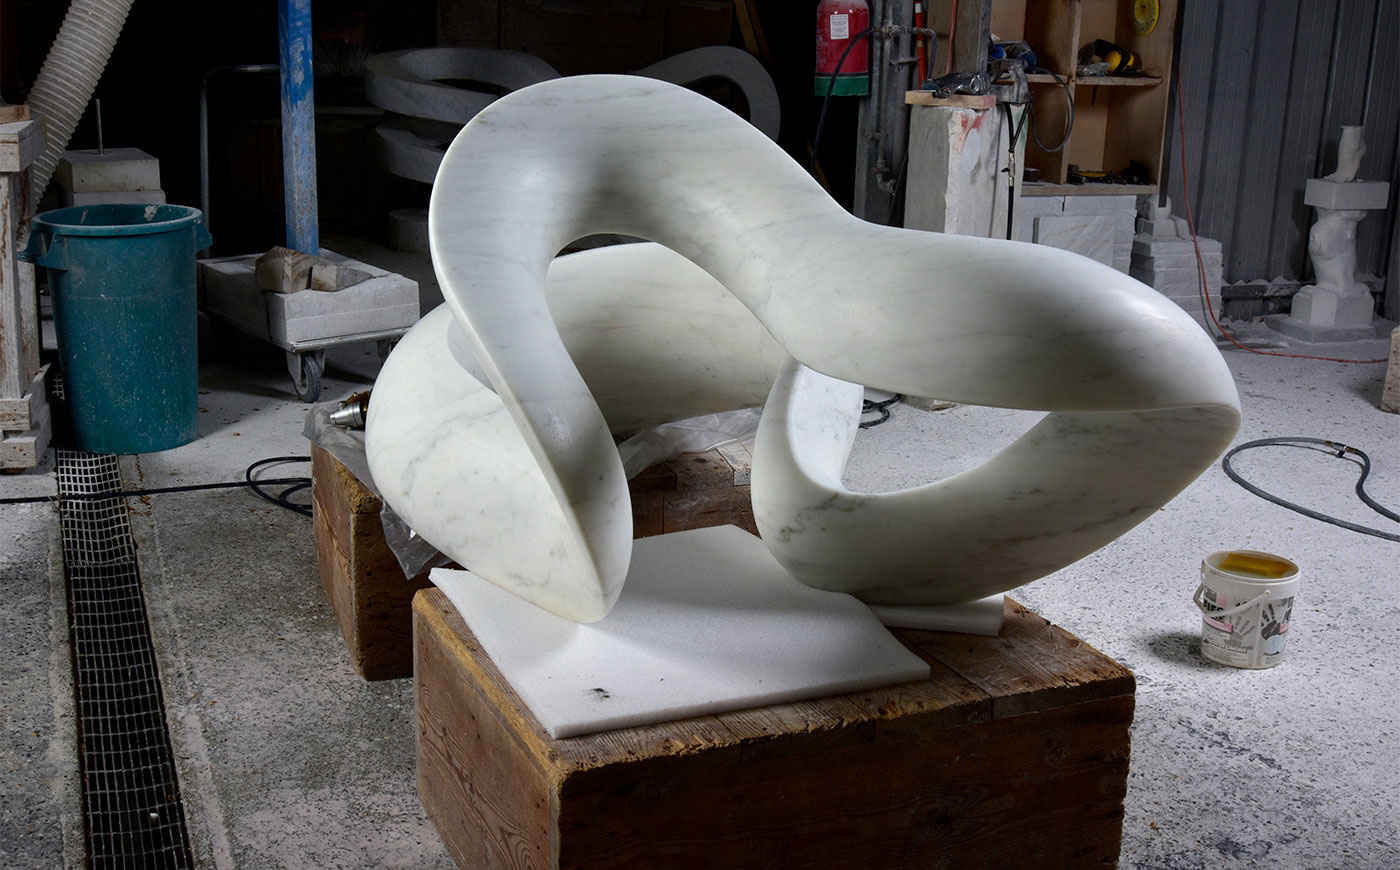 Richard Erdman Studios abstract sculpture process